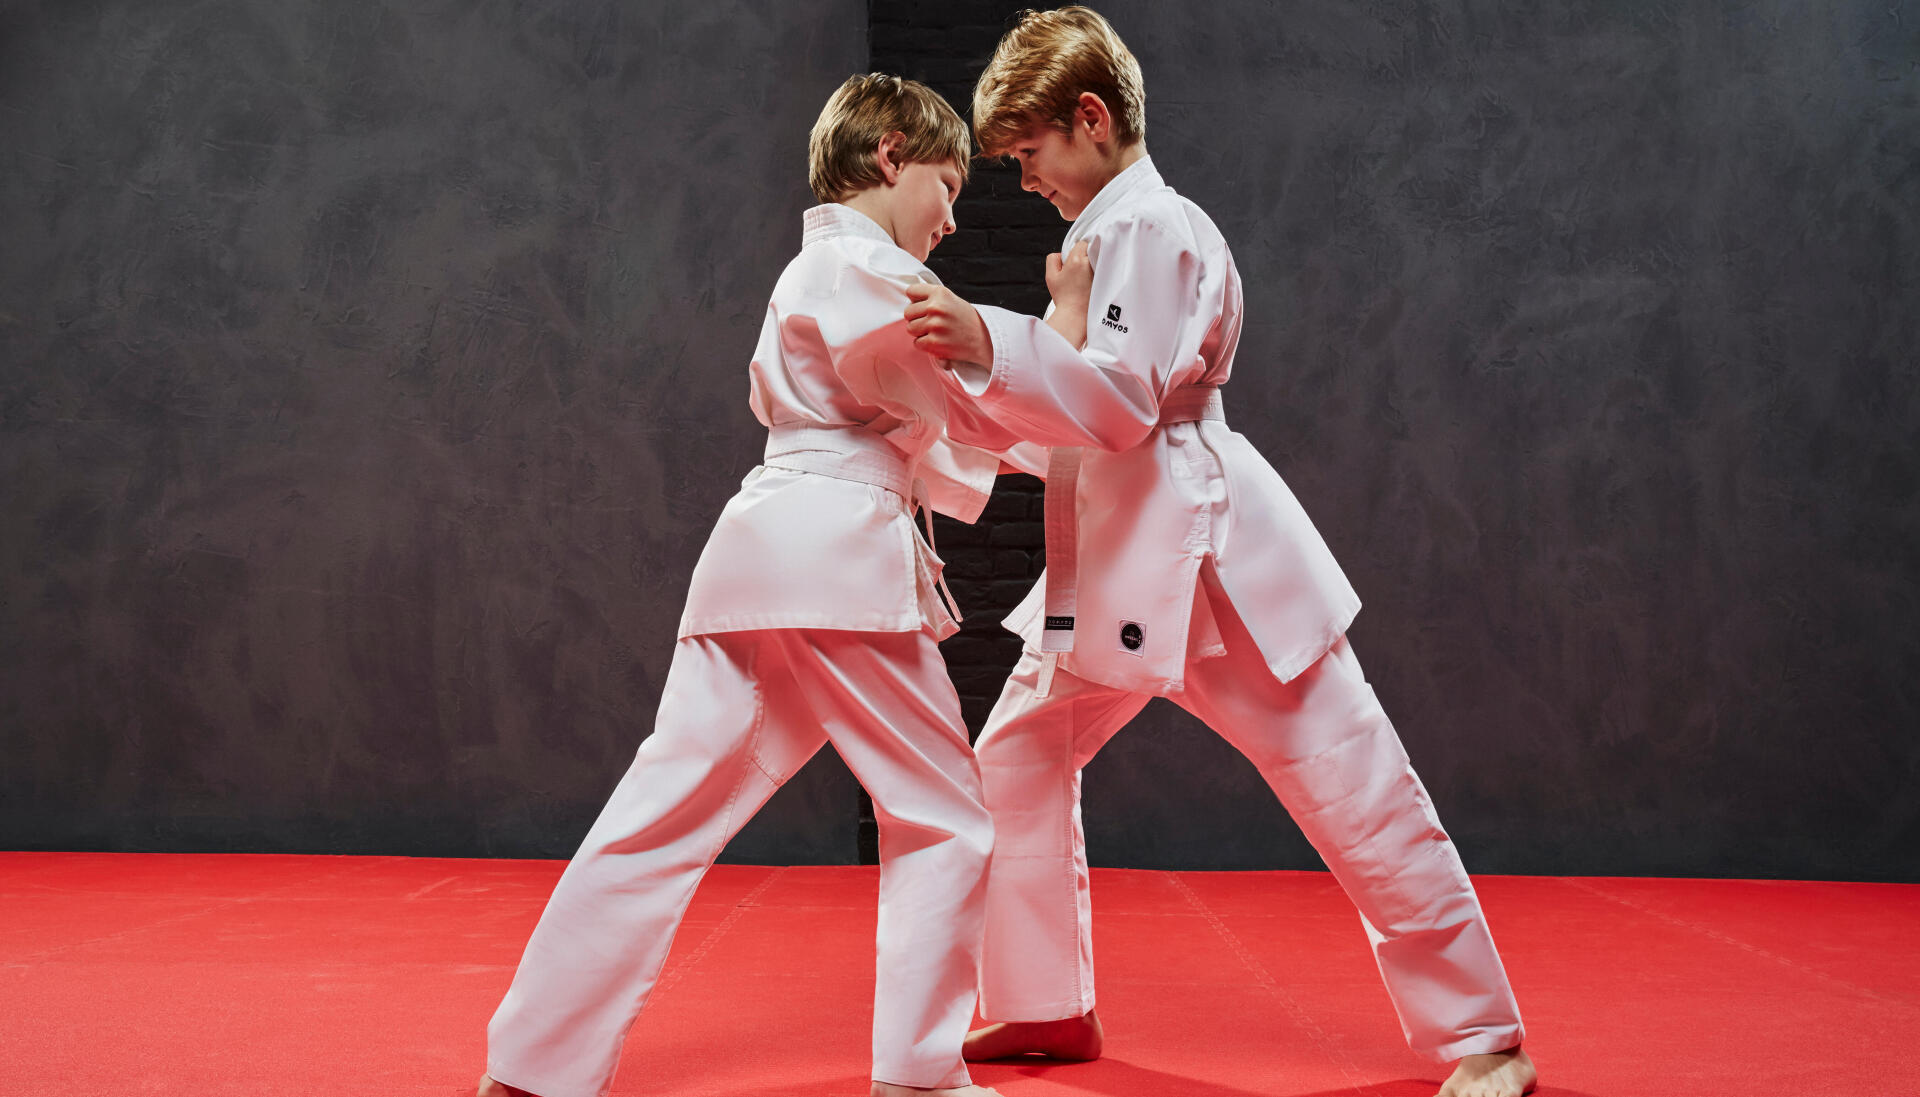 Razones para que los niños practiquen artes marciales